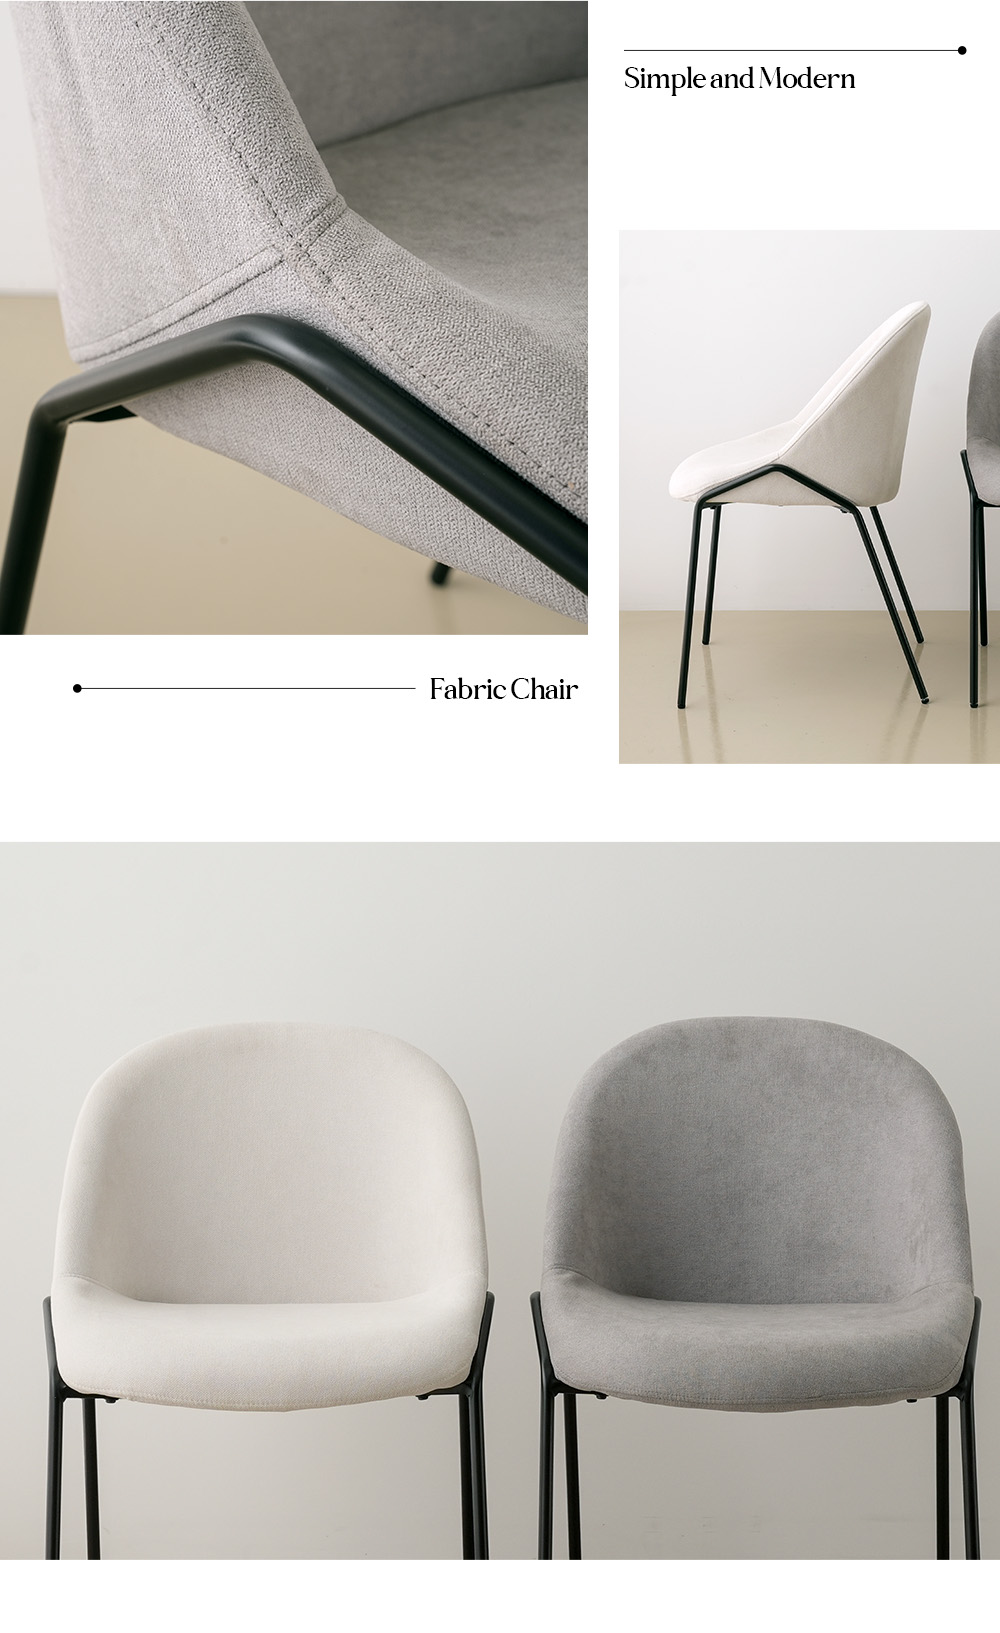 키워드 : 카페의자,카페인테리어,디자인의자,식탁의자,패브릭식탁의자,패브릭의자,1인용의자,철재의자,등받이의자